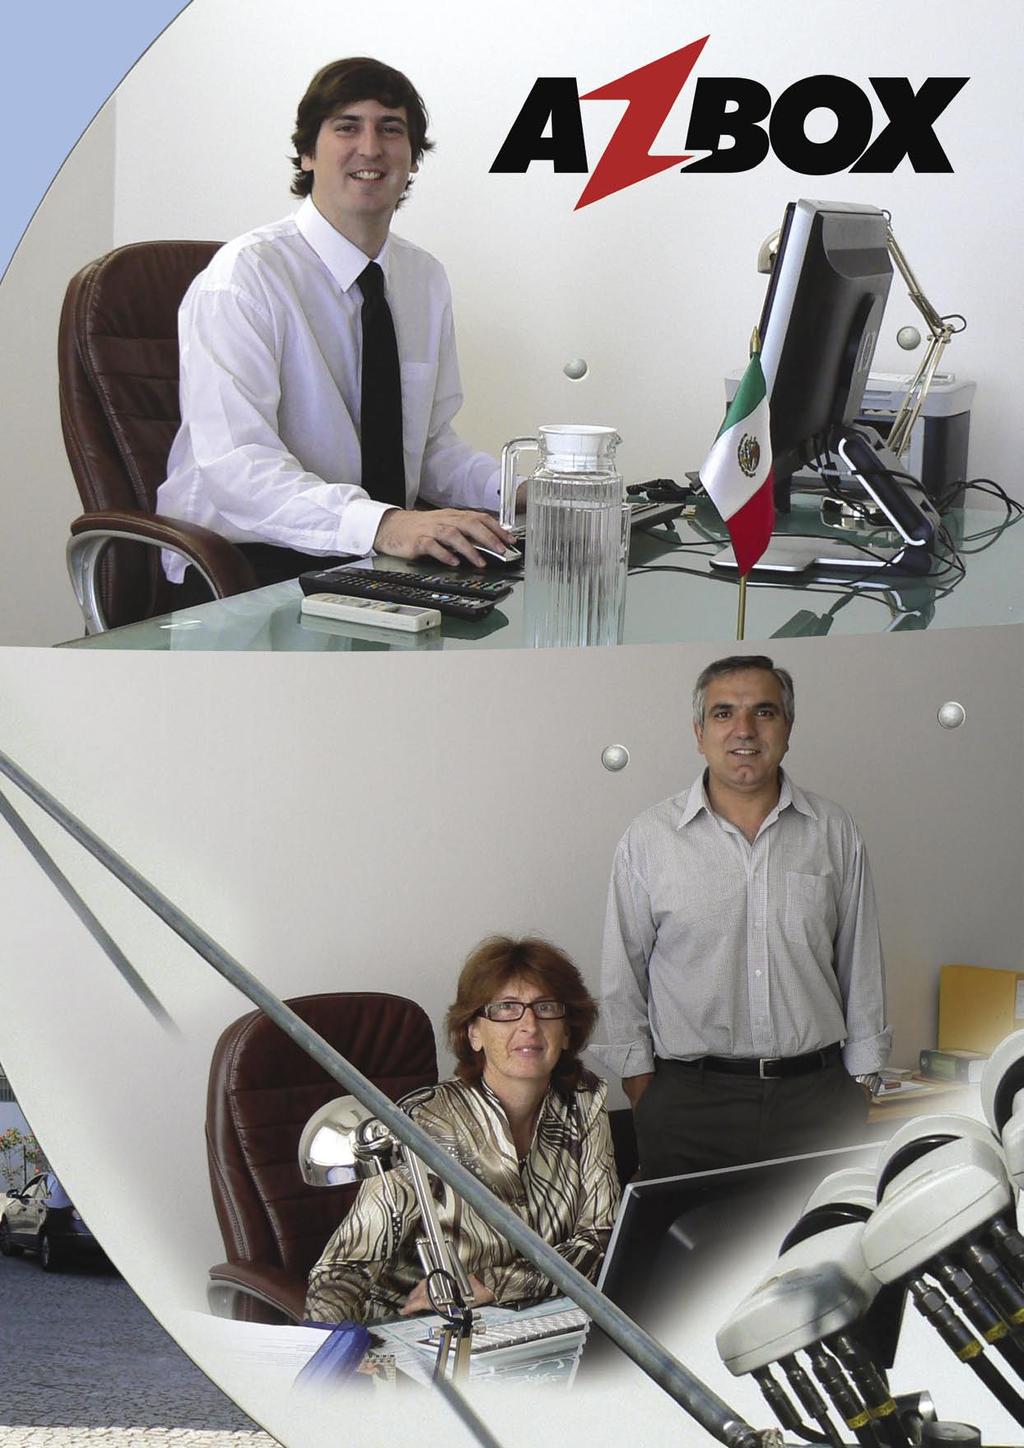 Hugo Contessa, az OPENSAT Kft. vezérigazgatója, az irodájában. Ő az igazgató és a műszaki vezető egyszemélyben. José-Luis Condesa, az OPENSAT Kft. gazdasági igazgatója, feleségével, Teresával.